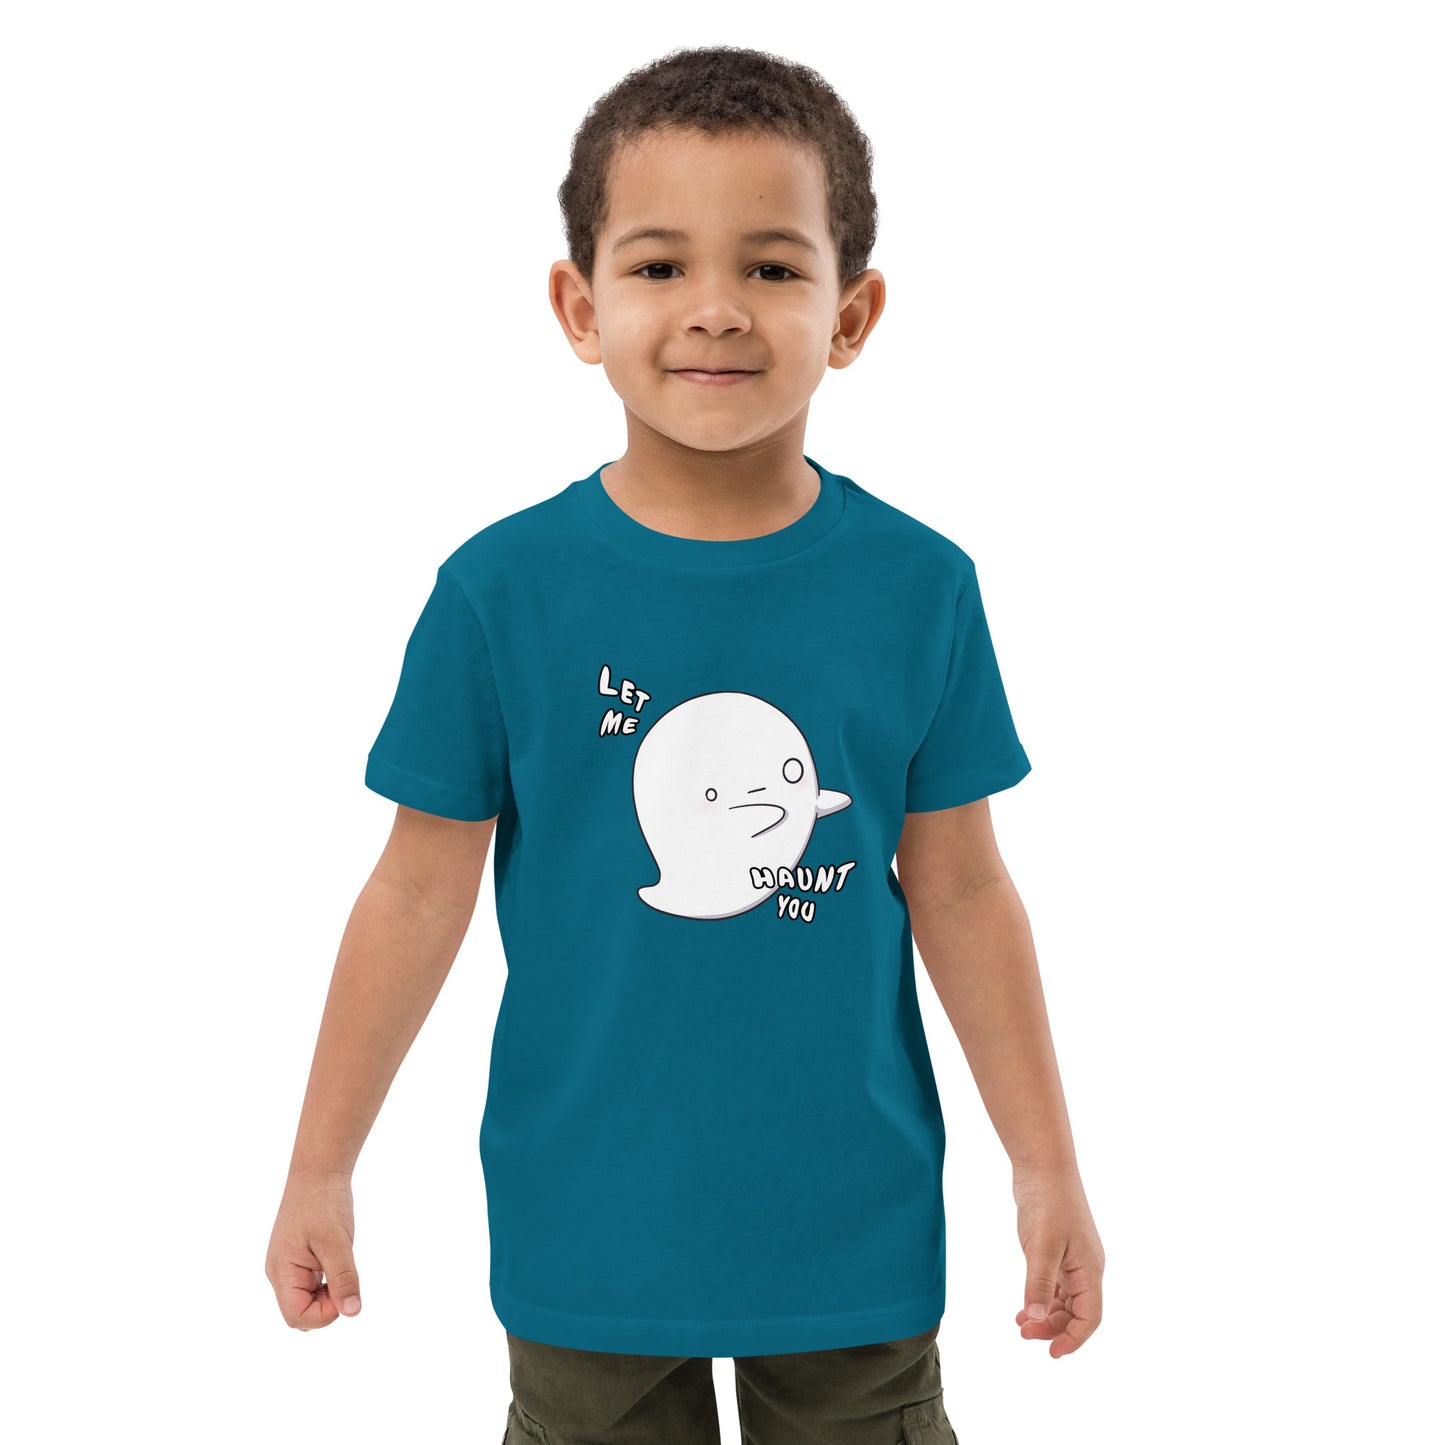 Let me haunt you - Organic cotton kids t-shirt